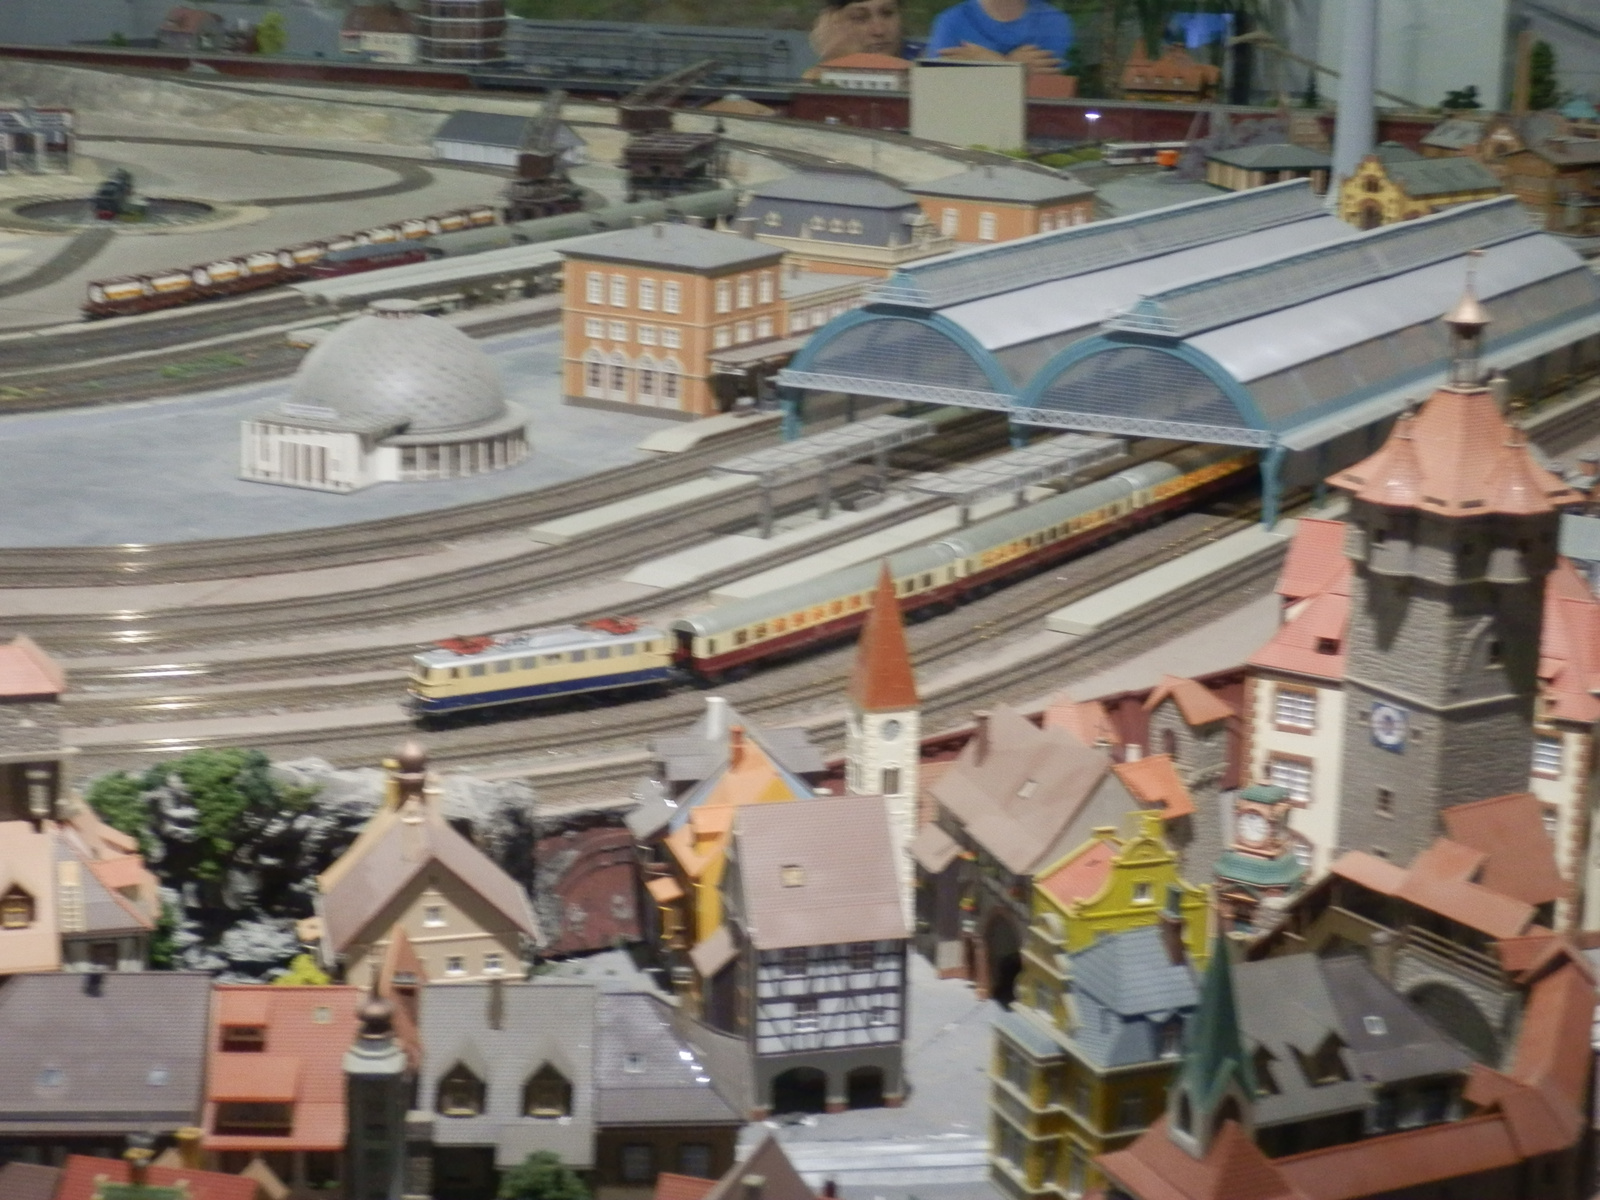 Keszthely vasútmodell kiállítás 2012.07